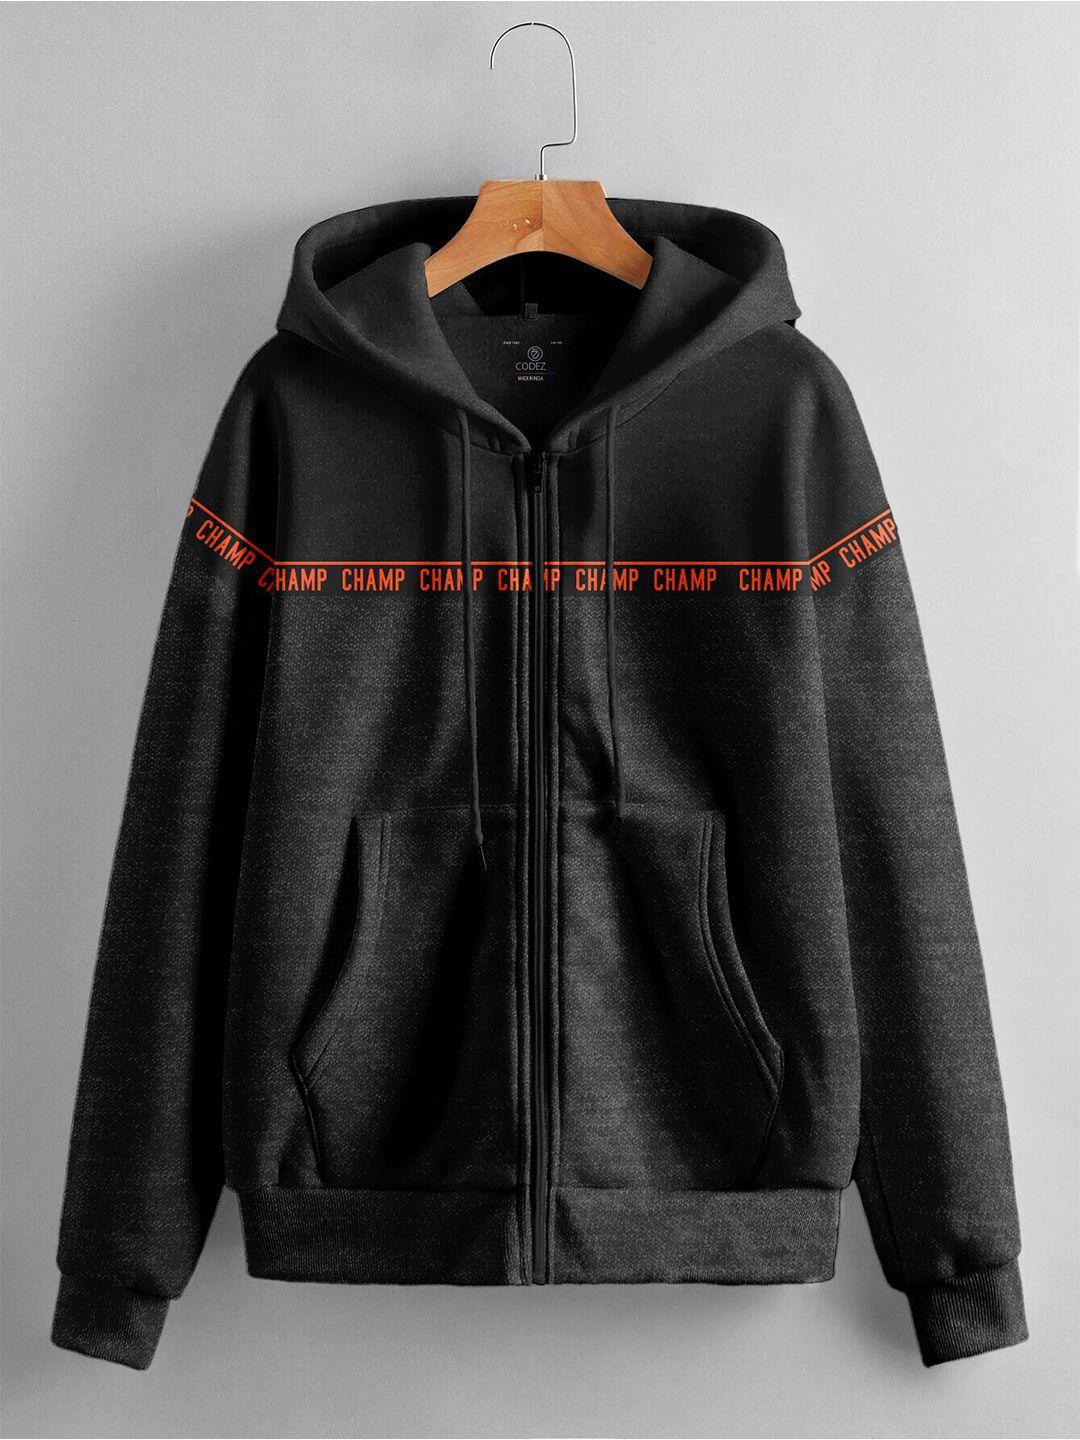 baesd-boys-typography-printed-hooded-fleece-front-open-sweatshirt